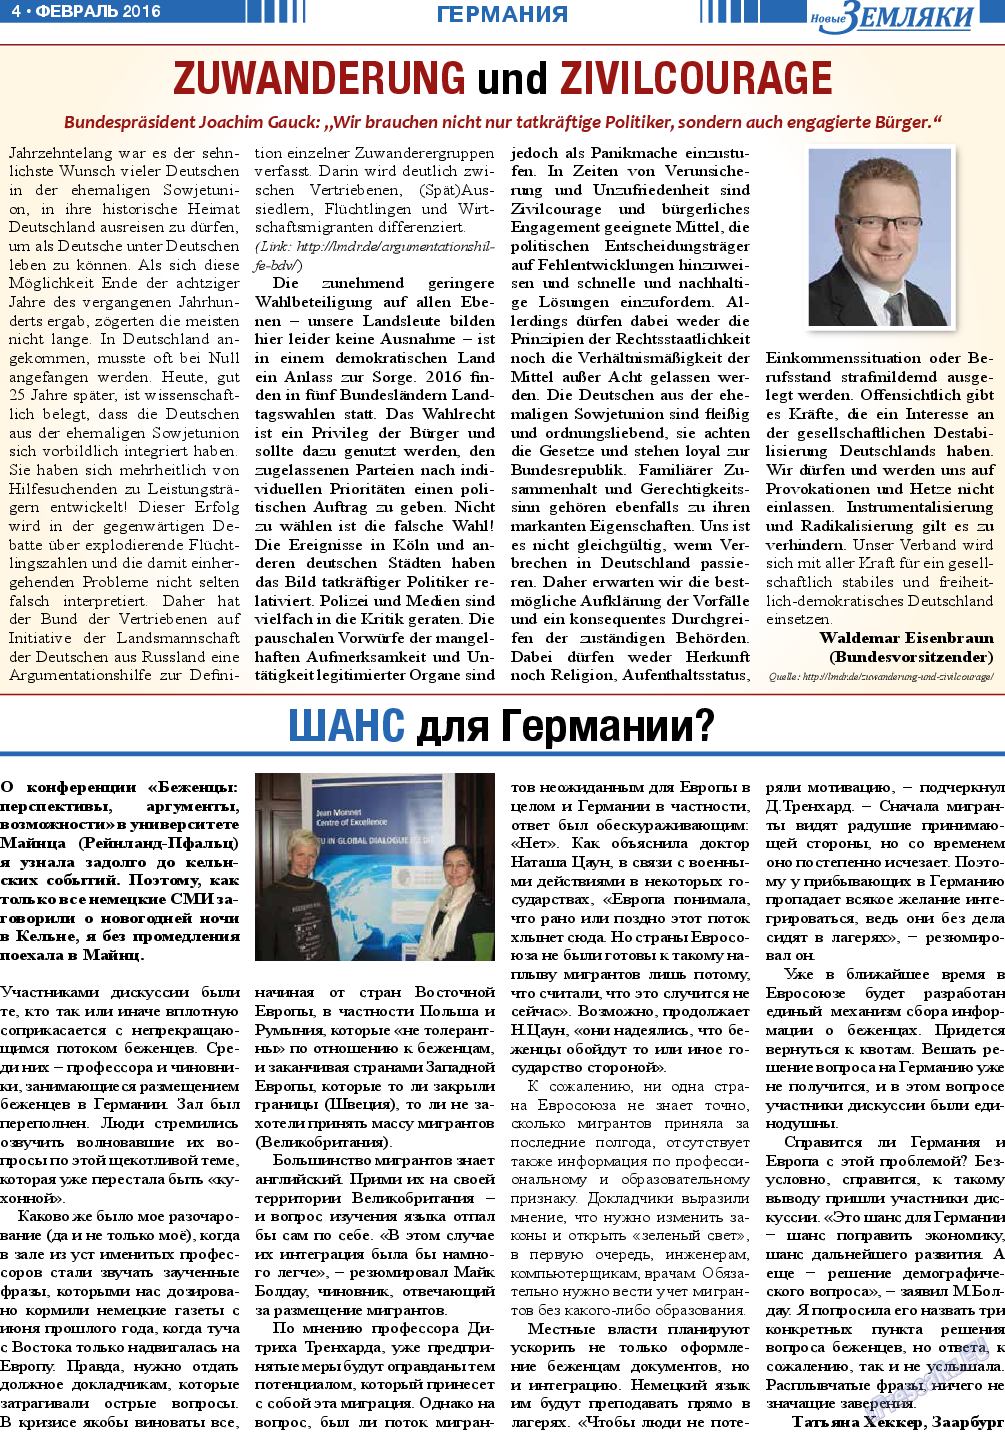 Новые Земляки, газета. 2016 №2 стр.4